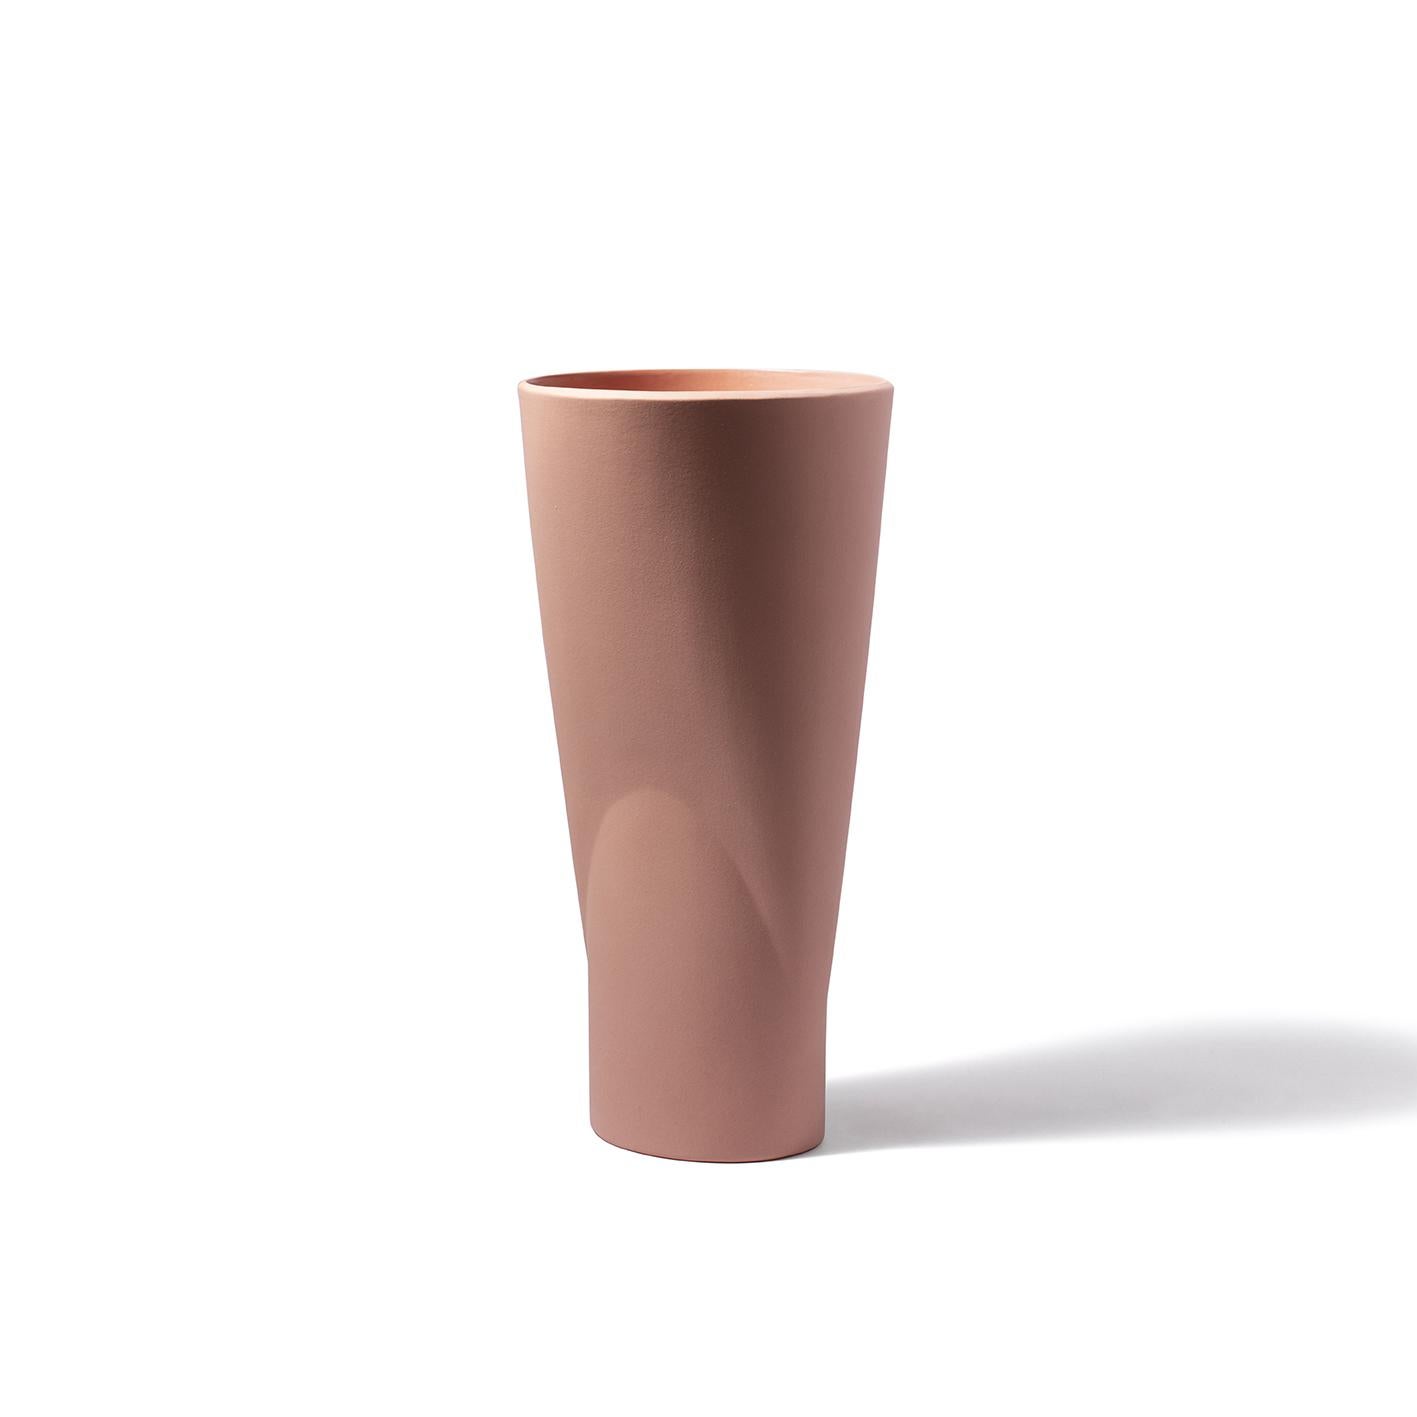 Chamalea est un vase en céramique avec finition mate à l'extérieur et émaillée à l'intérieur, conçu par Chiara Andreatti pour Paola C., et il fait partie de la Collection C.I.C., une famille composée de porte-gâteaux, de centres de table, de coupes